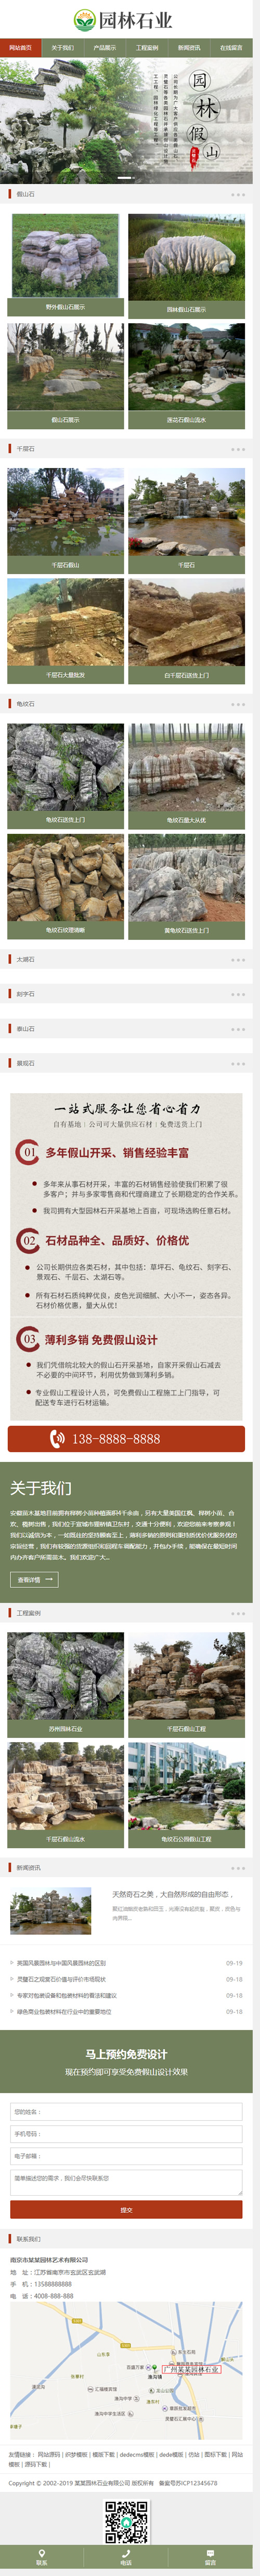 （带手机版数据同步）中国风古典园林石业网站源码 水墨风格园林艺术织梦模板插图源码资源库